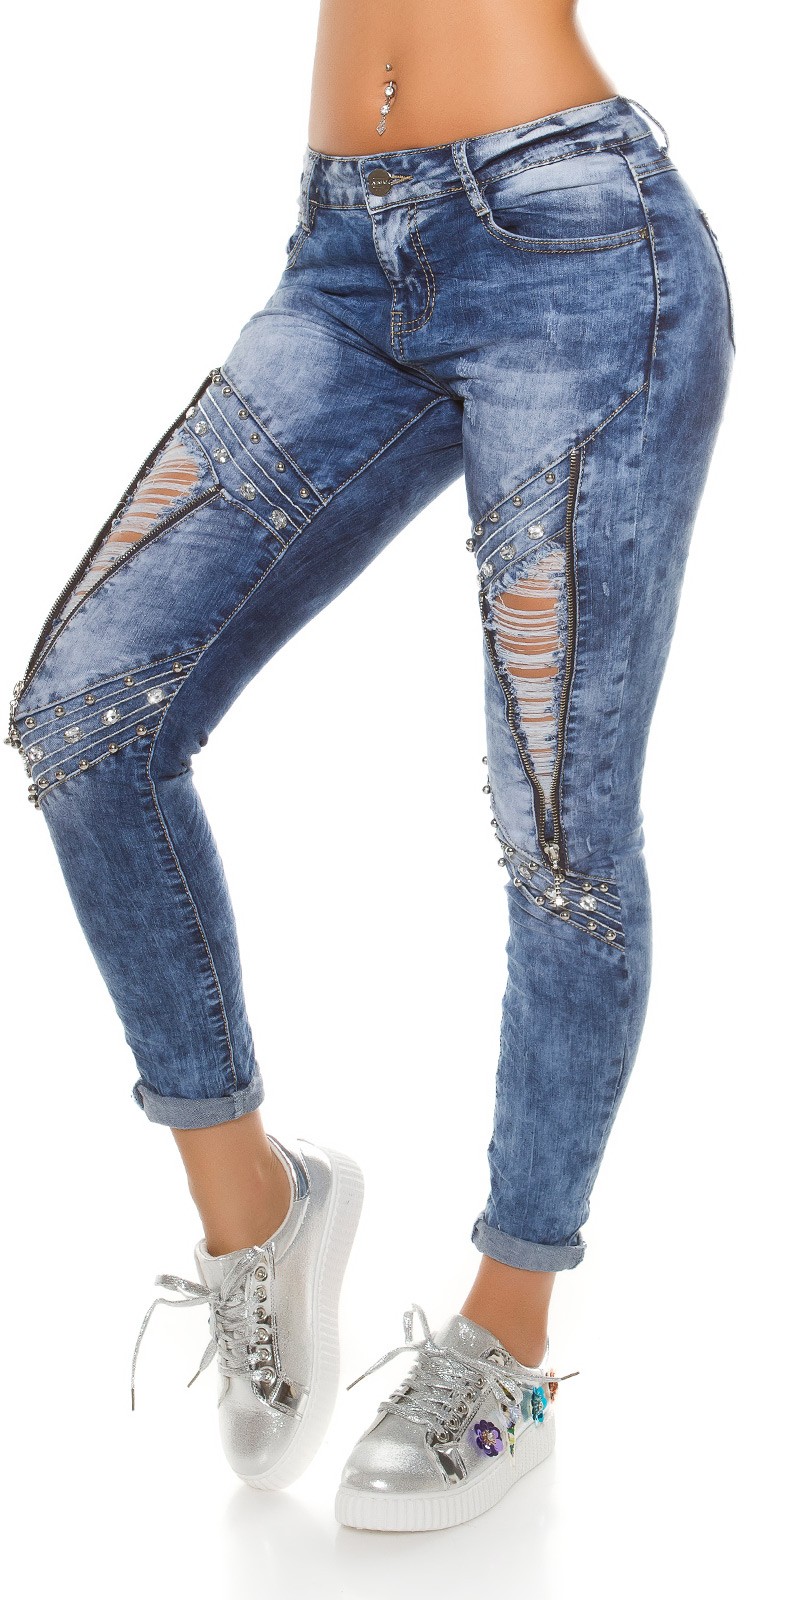 Jeans c/ cristais 7